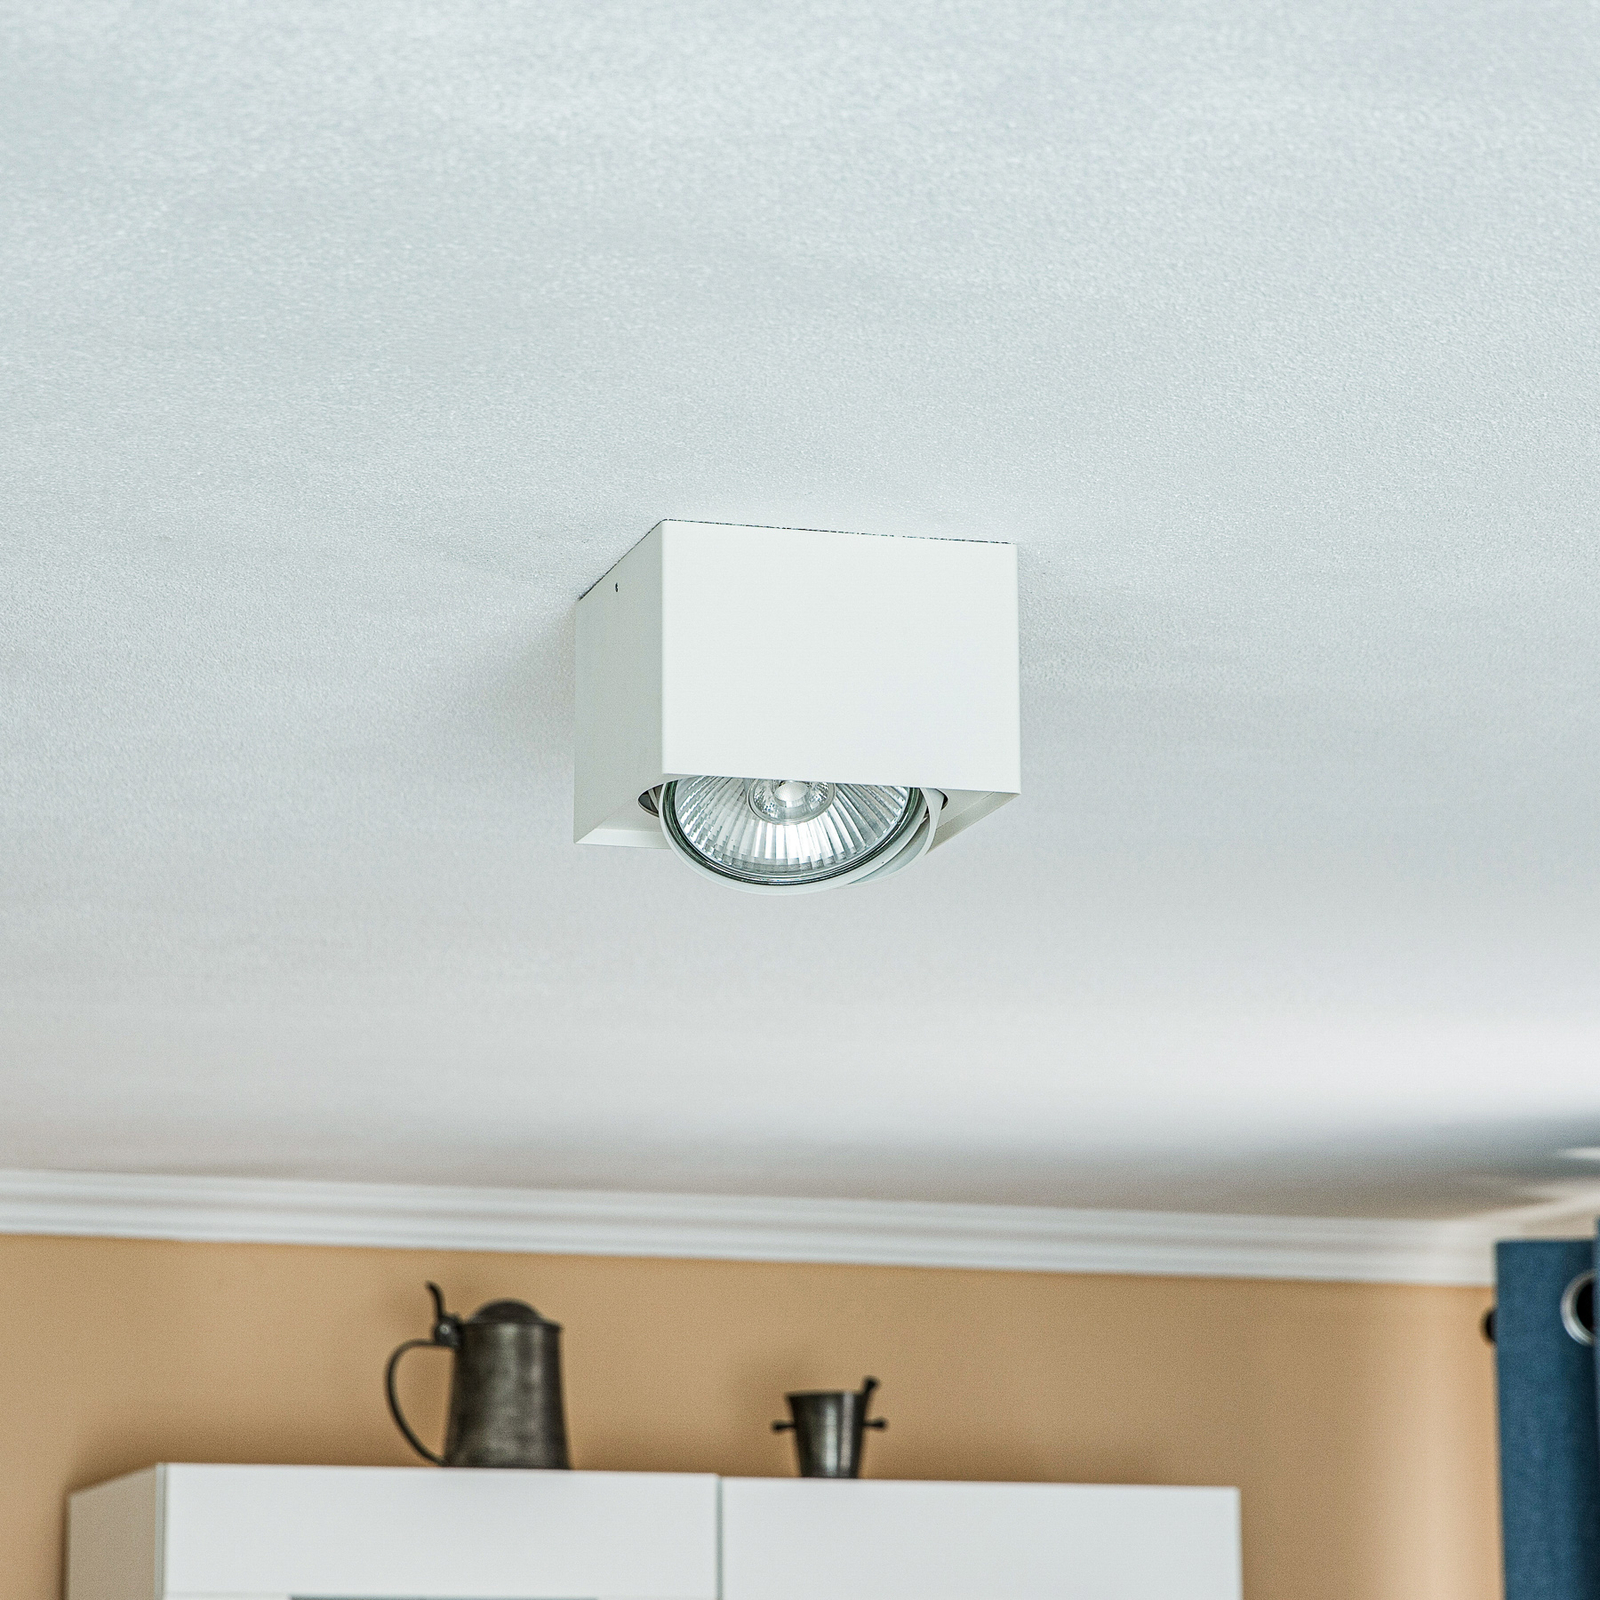 Ronda ceiling spotlight, one-bulb, white